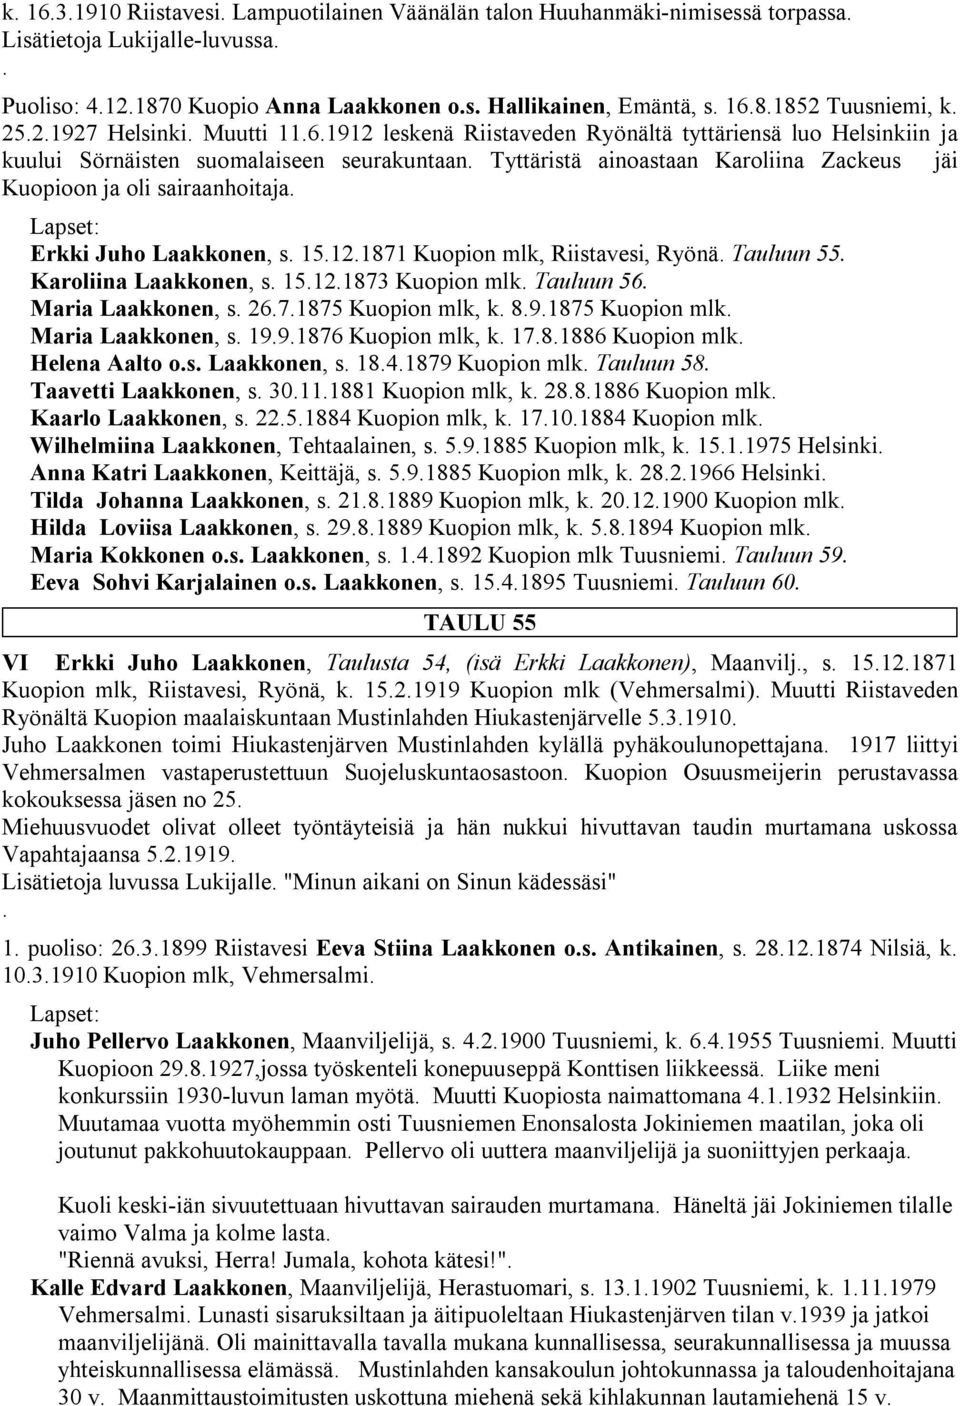 Tyttäristä ainoastaan Karoliina Zackeus jäi Kuopioon ja oli sairaanhoitaja. Erkki Juho Laakkonen, s. 15.12.1871 Kuopion mlk, Riistavesi, Ryönä. Tauluun 55. Karoliina Laakkonen, s. 15.12.1873 Kuopion mlk.